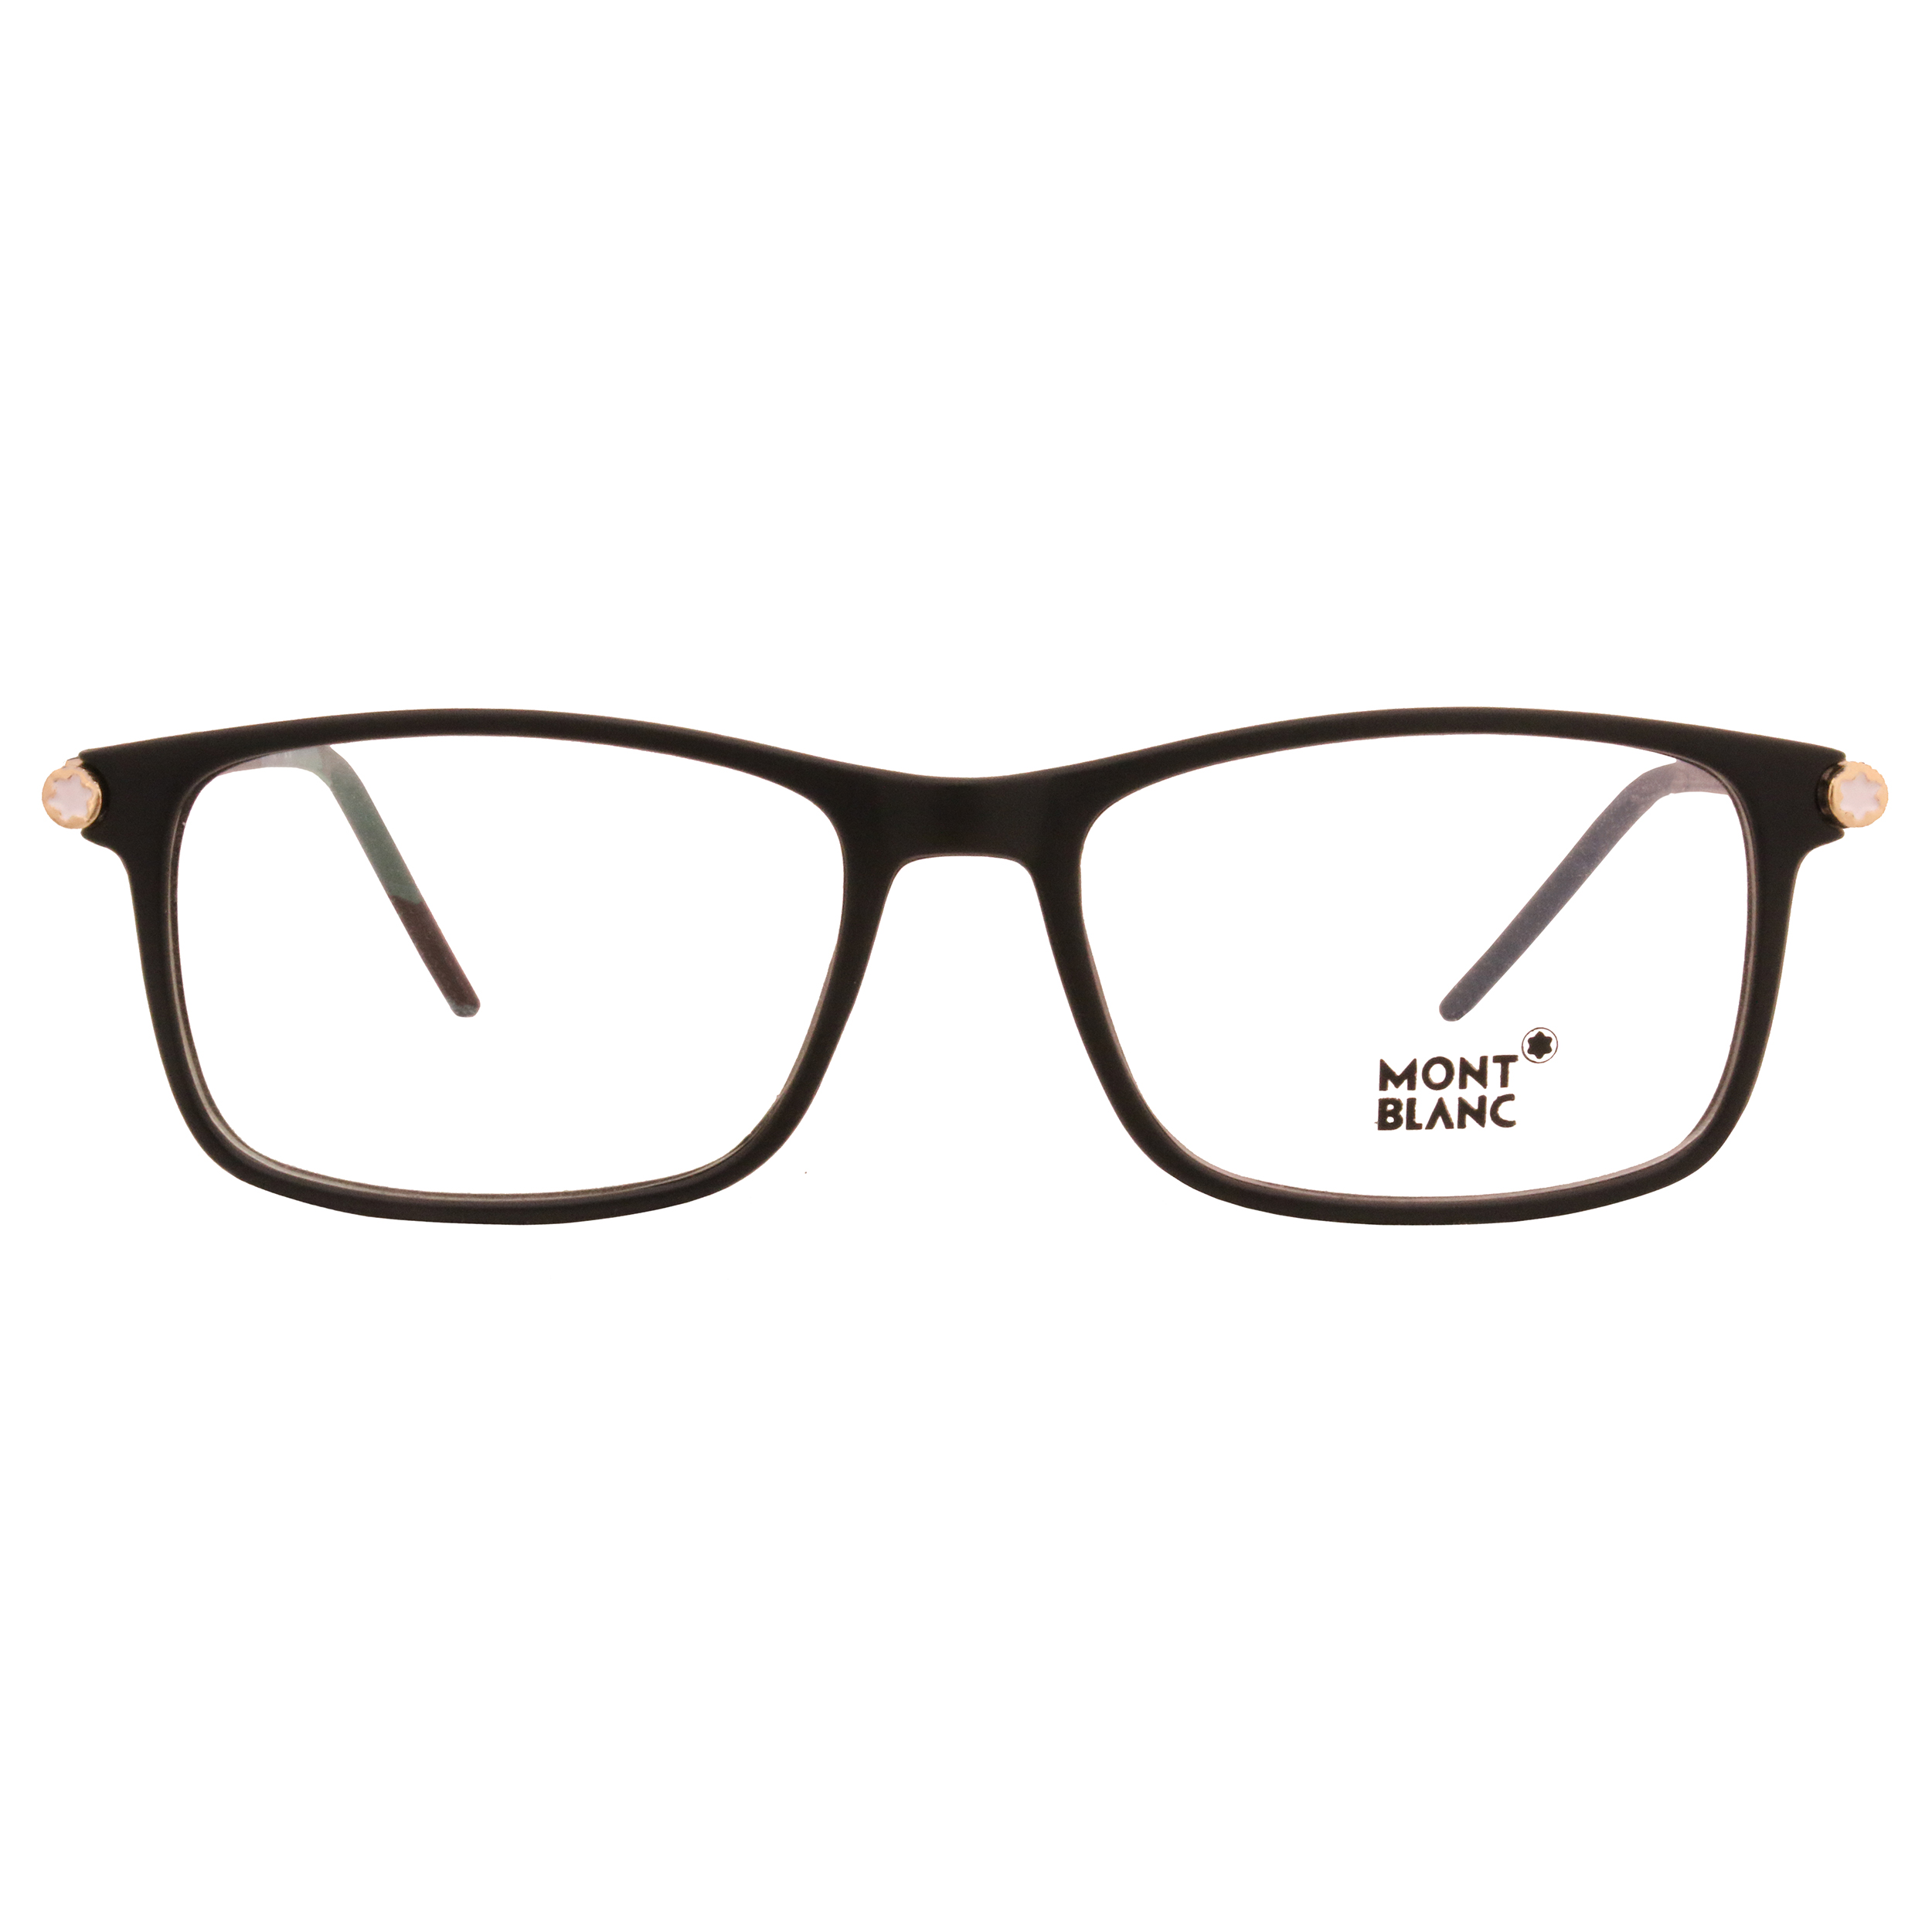 فریم عینک طبی مون بلان مدل 5019BC